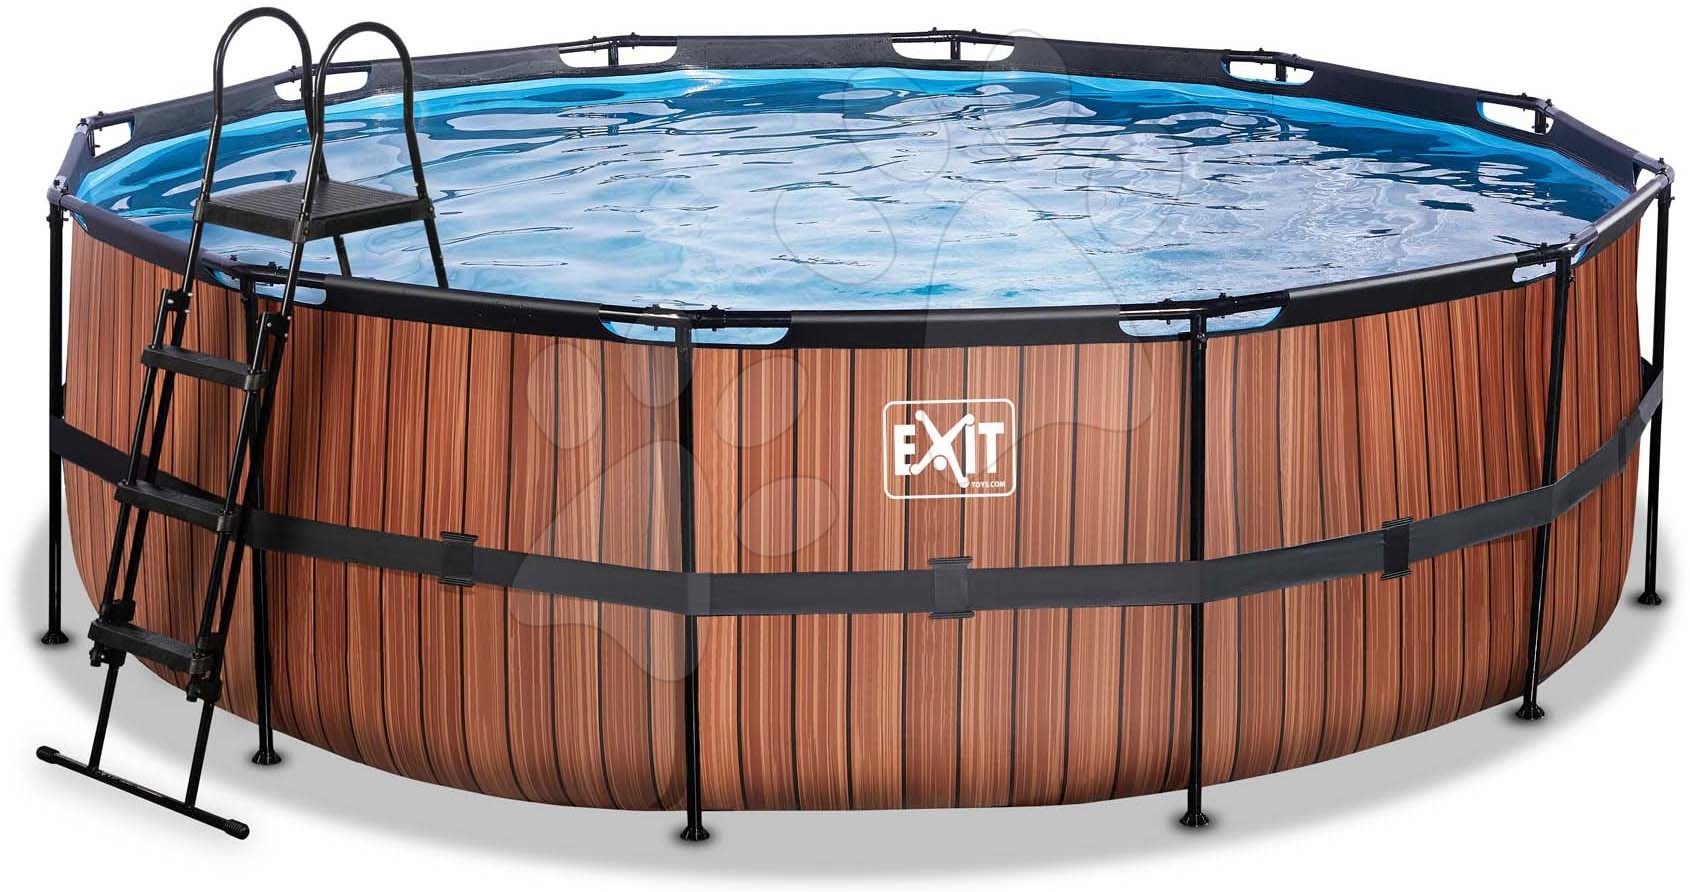 Medence homokszűrős vízforgatóval Wood pool Exit Toys kerek acél medencekeret 450*122 cm barna 6 évtől